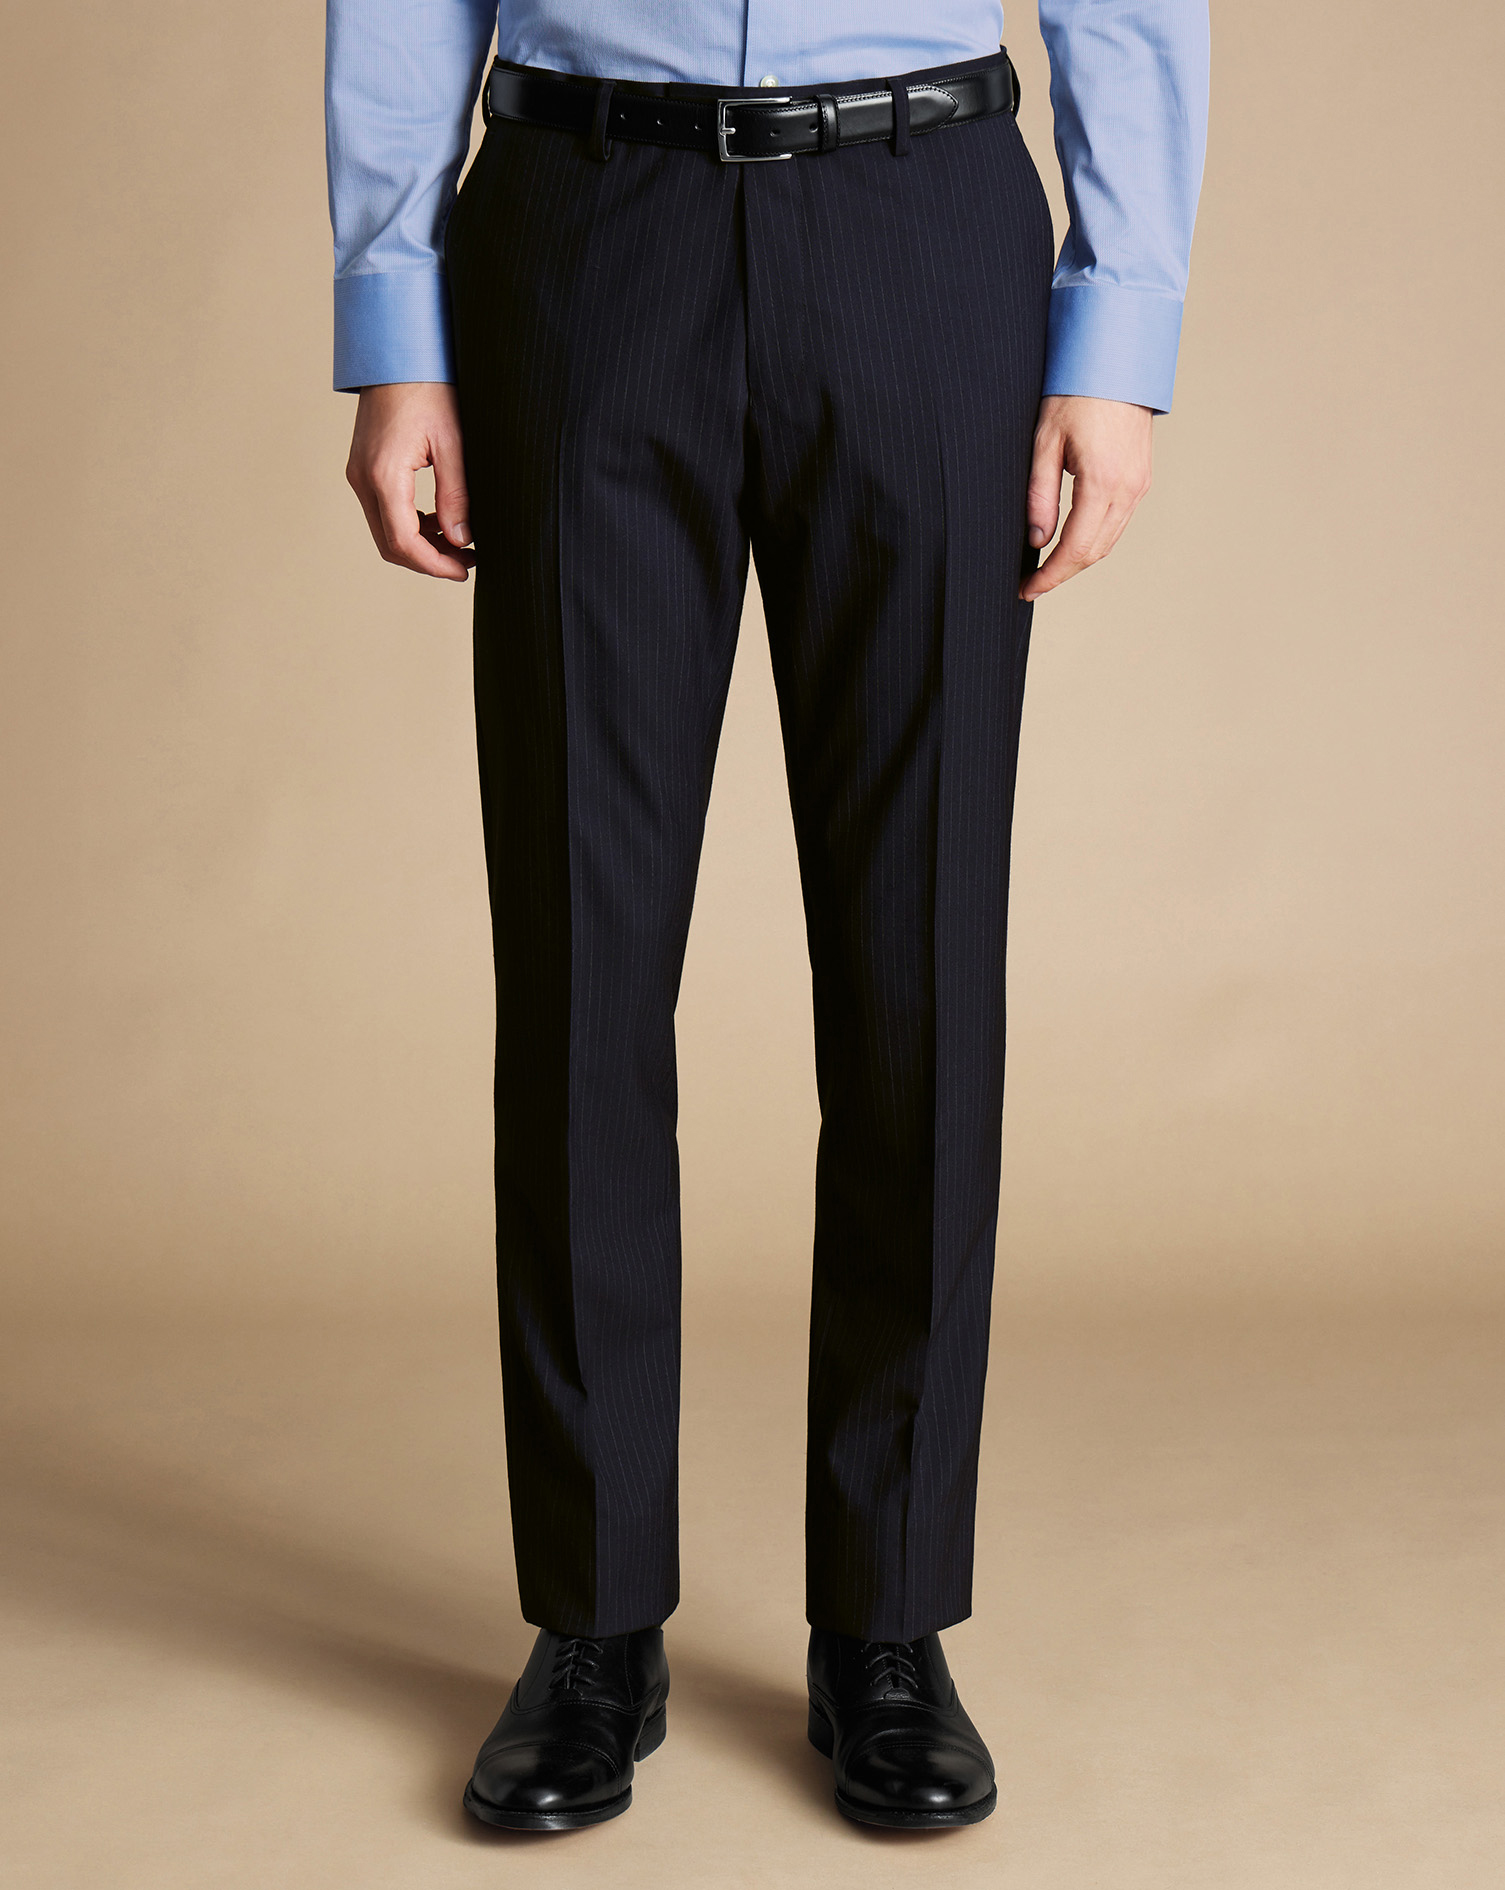 Men's Charles Tyrwhitt Ultimate Performance Stripe Suit Trousers - Dark Navy Size 36/32
